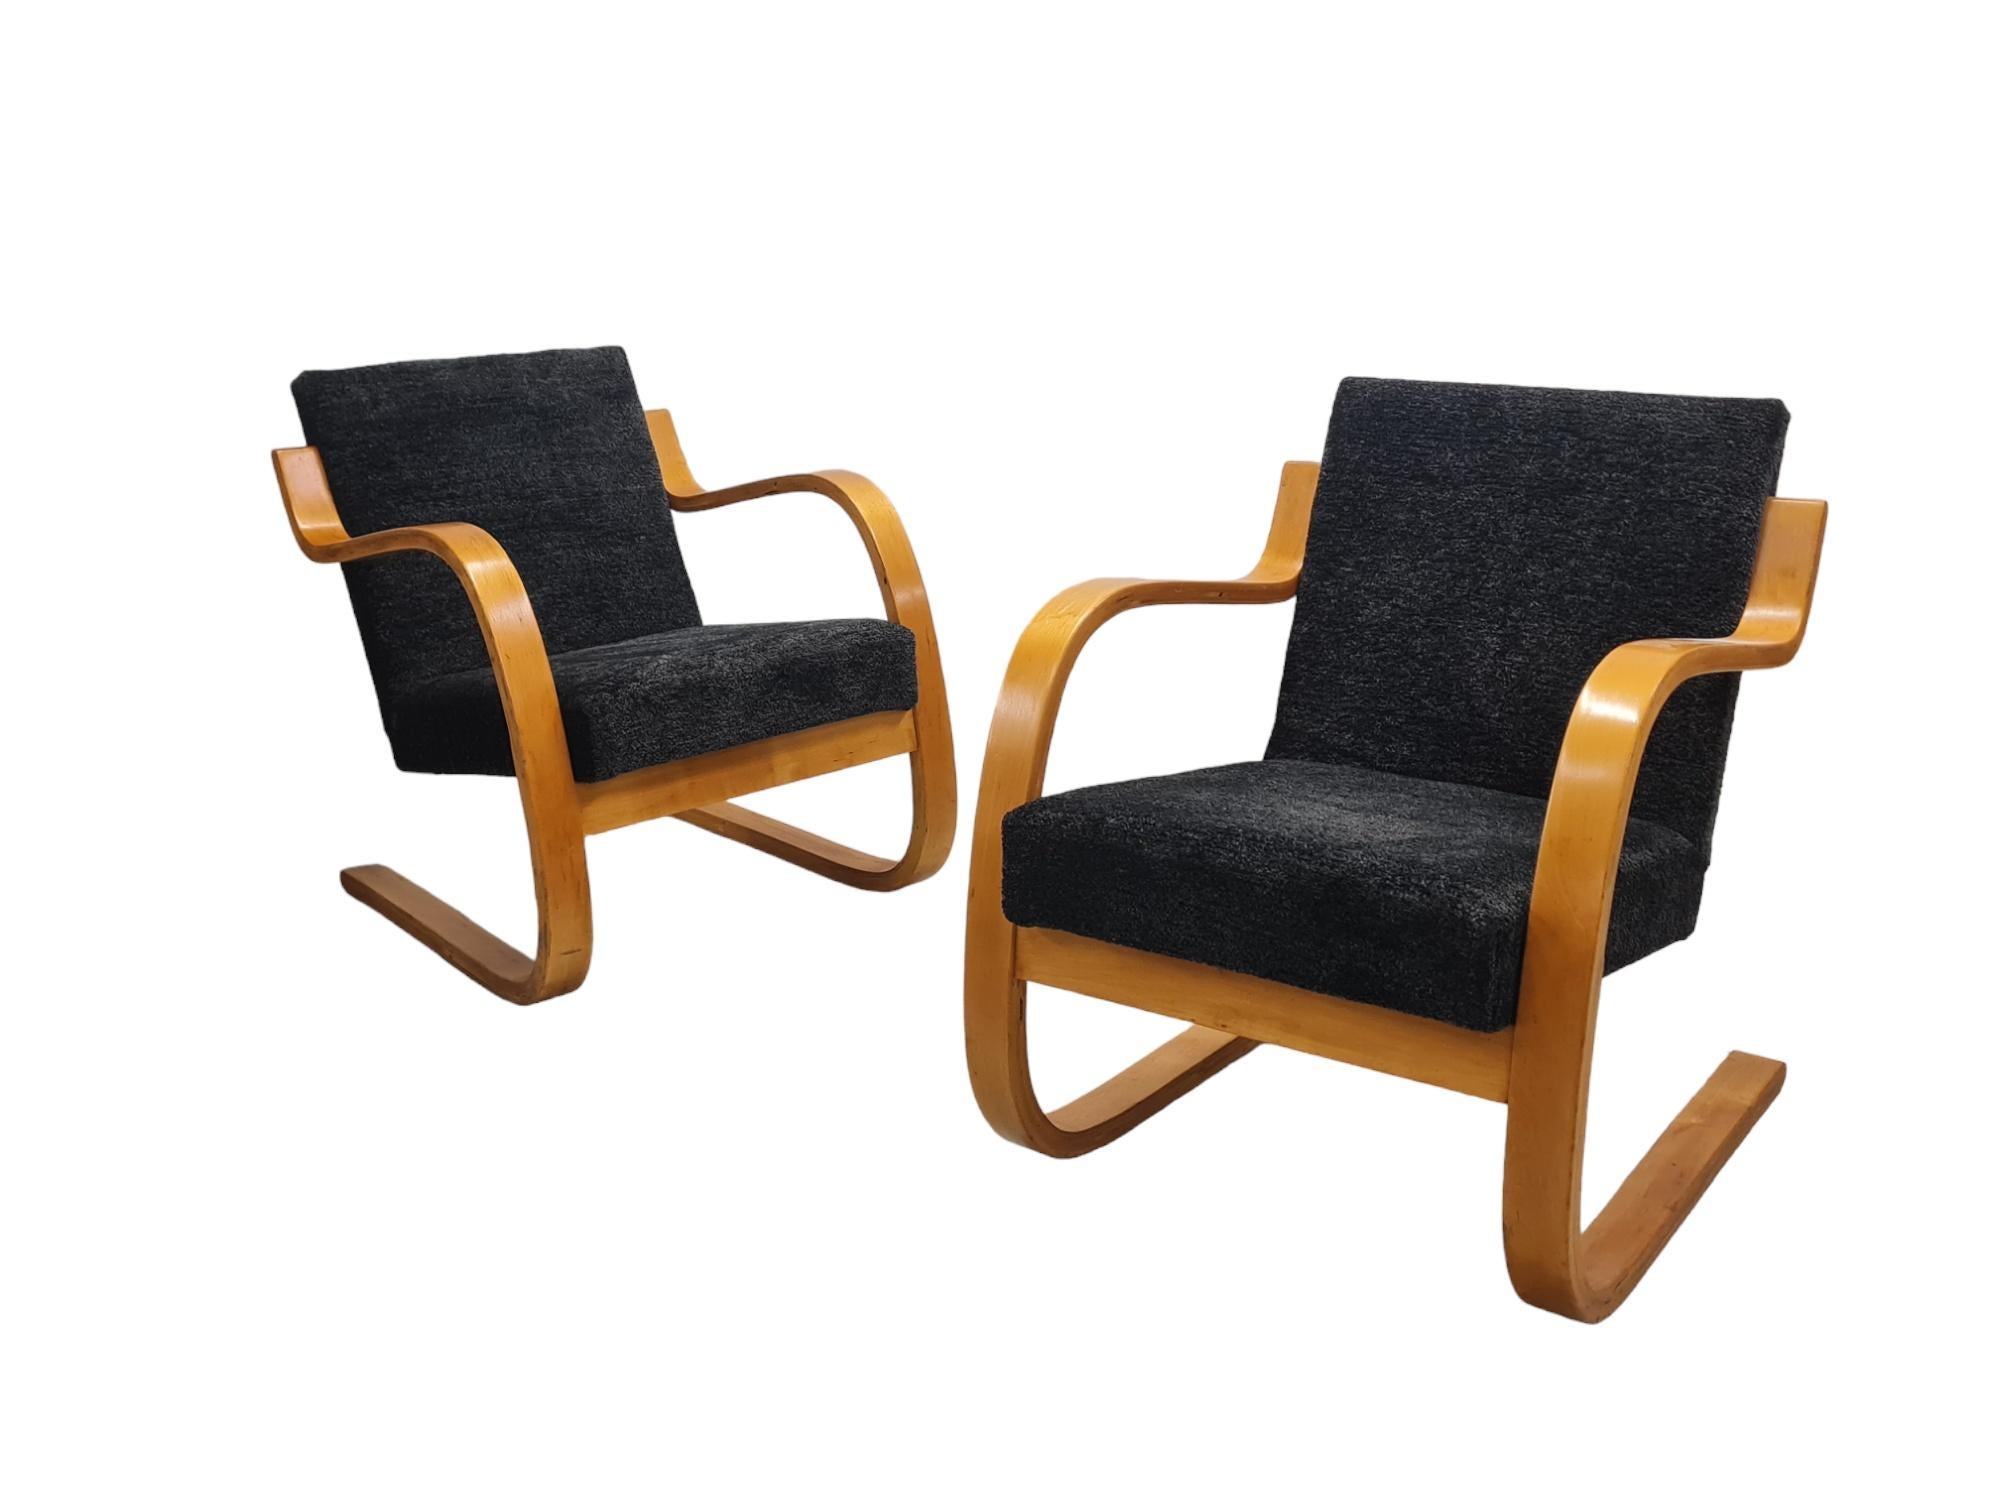 Magnifique paire de chaises à ressort Alvar Aalto du milieu du siècle, modèle 402, également connues sous le nom de Pikkupaimio (petit paimio), associées au légendaire sanatorium de Paimio conçu par Aalto. 

Les chaises sont légères et peuvent être